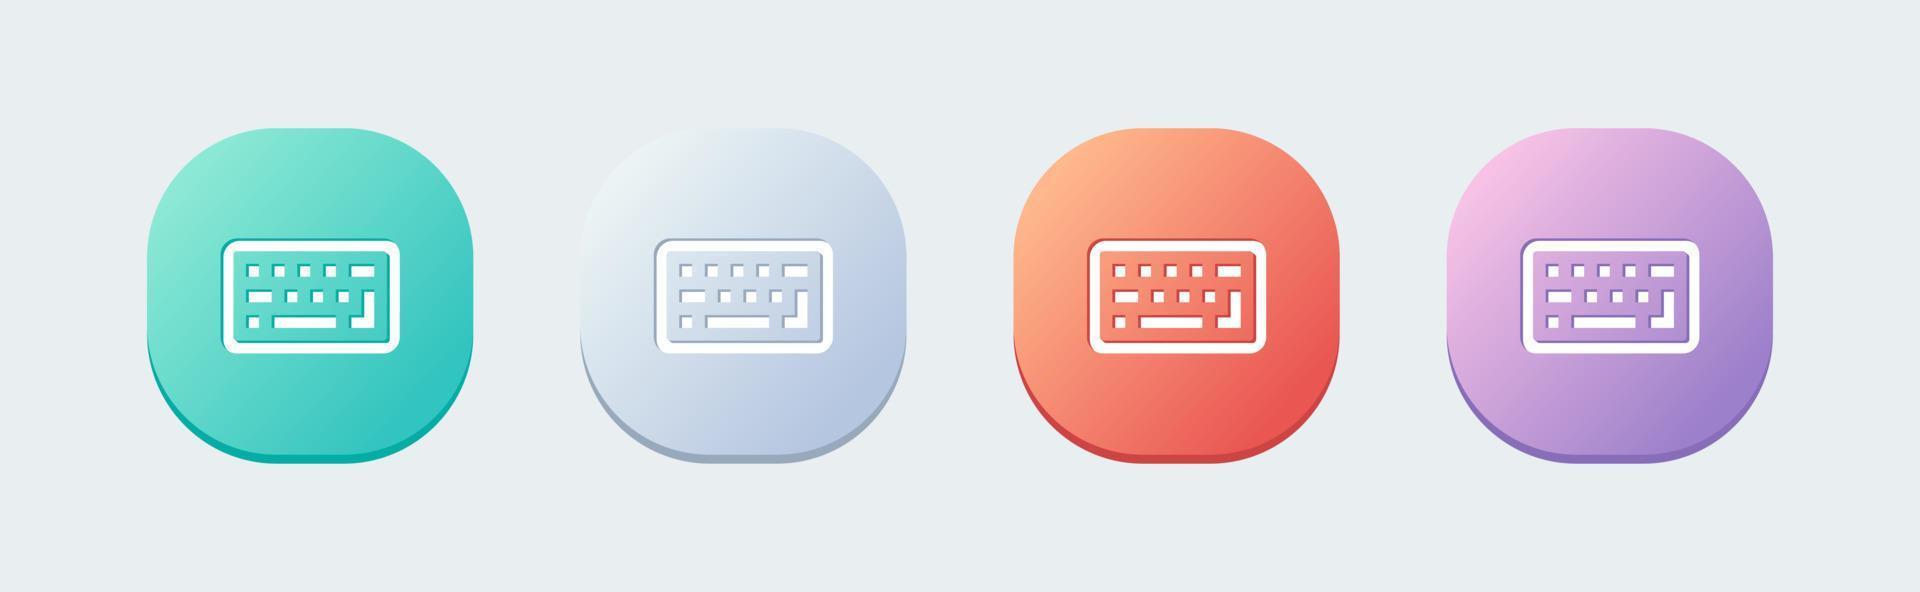 icono de línea de teclado en estilo de diseño plano. Ilustración de vector de signos de botón de computadora.